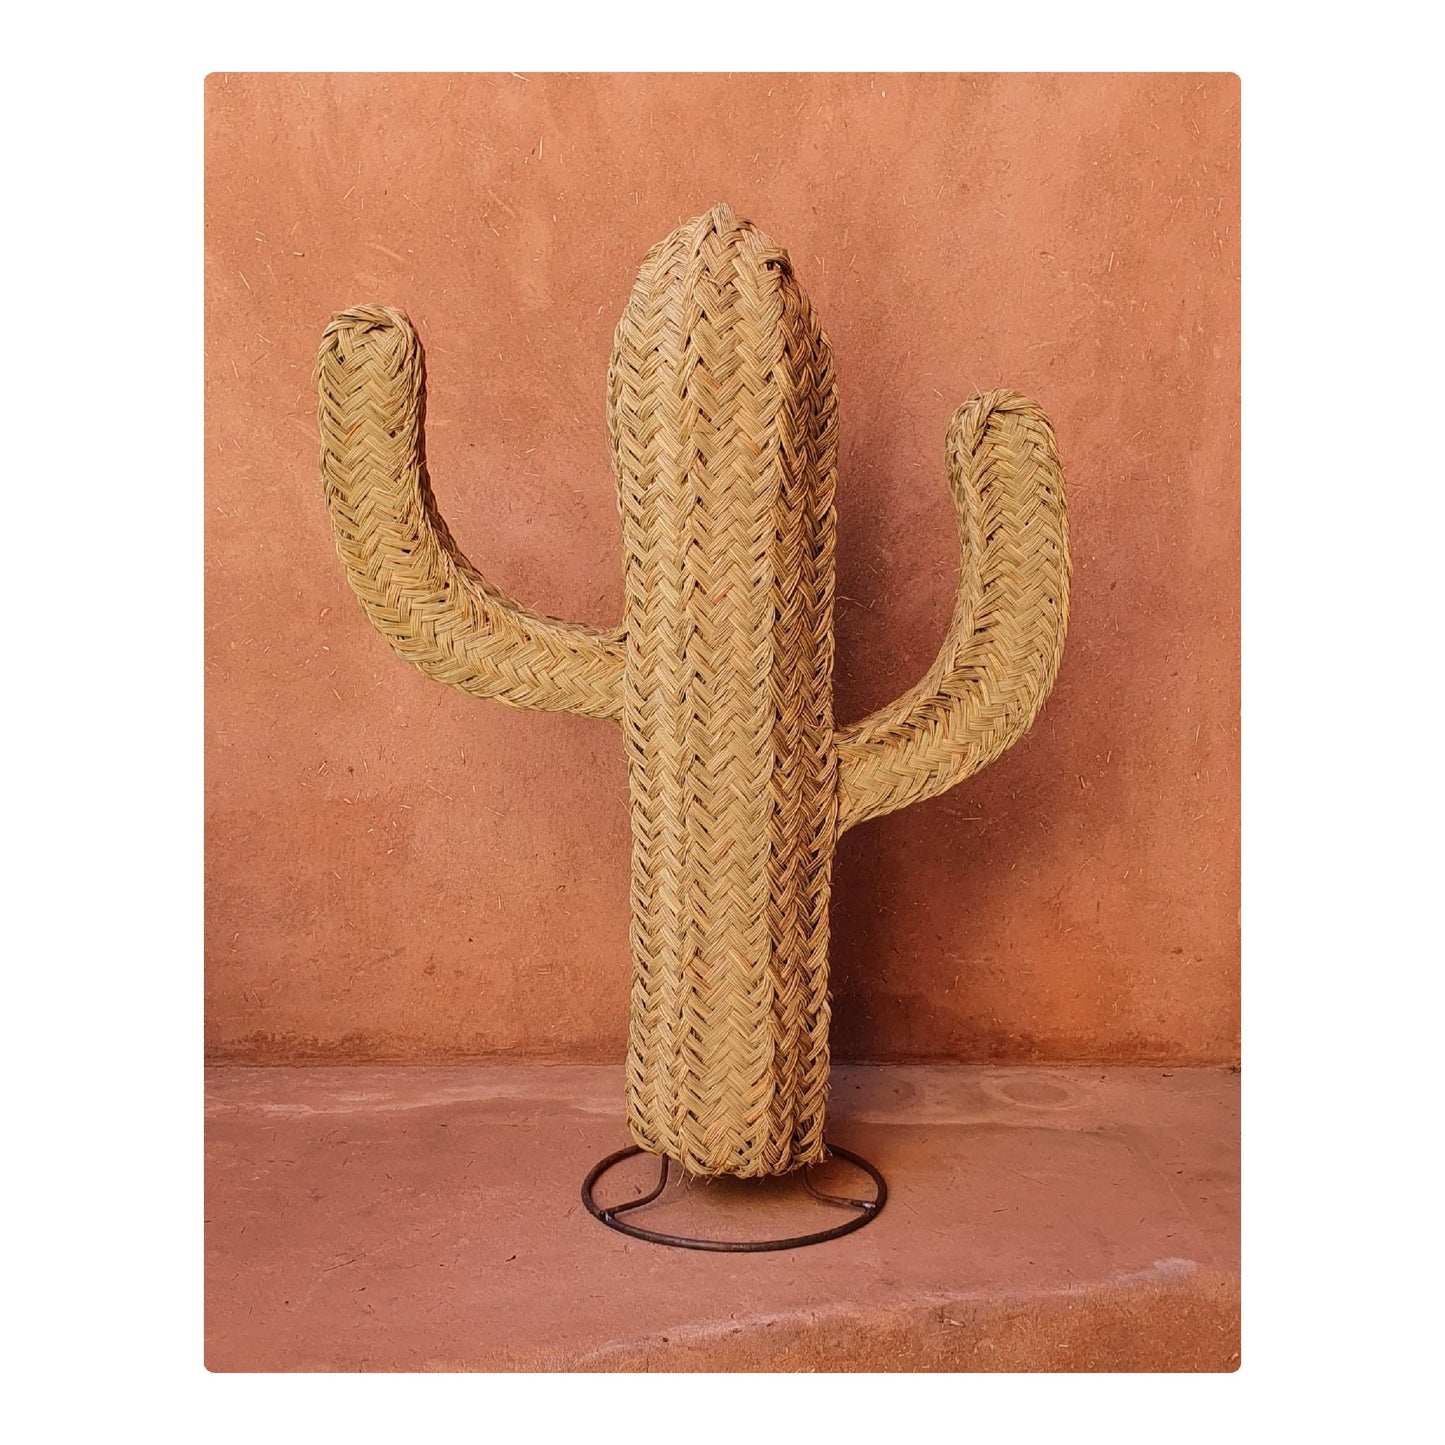 Décoration cactus en paille tressée